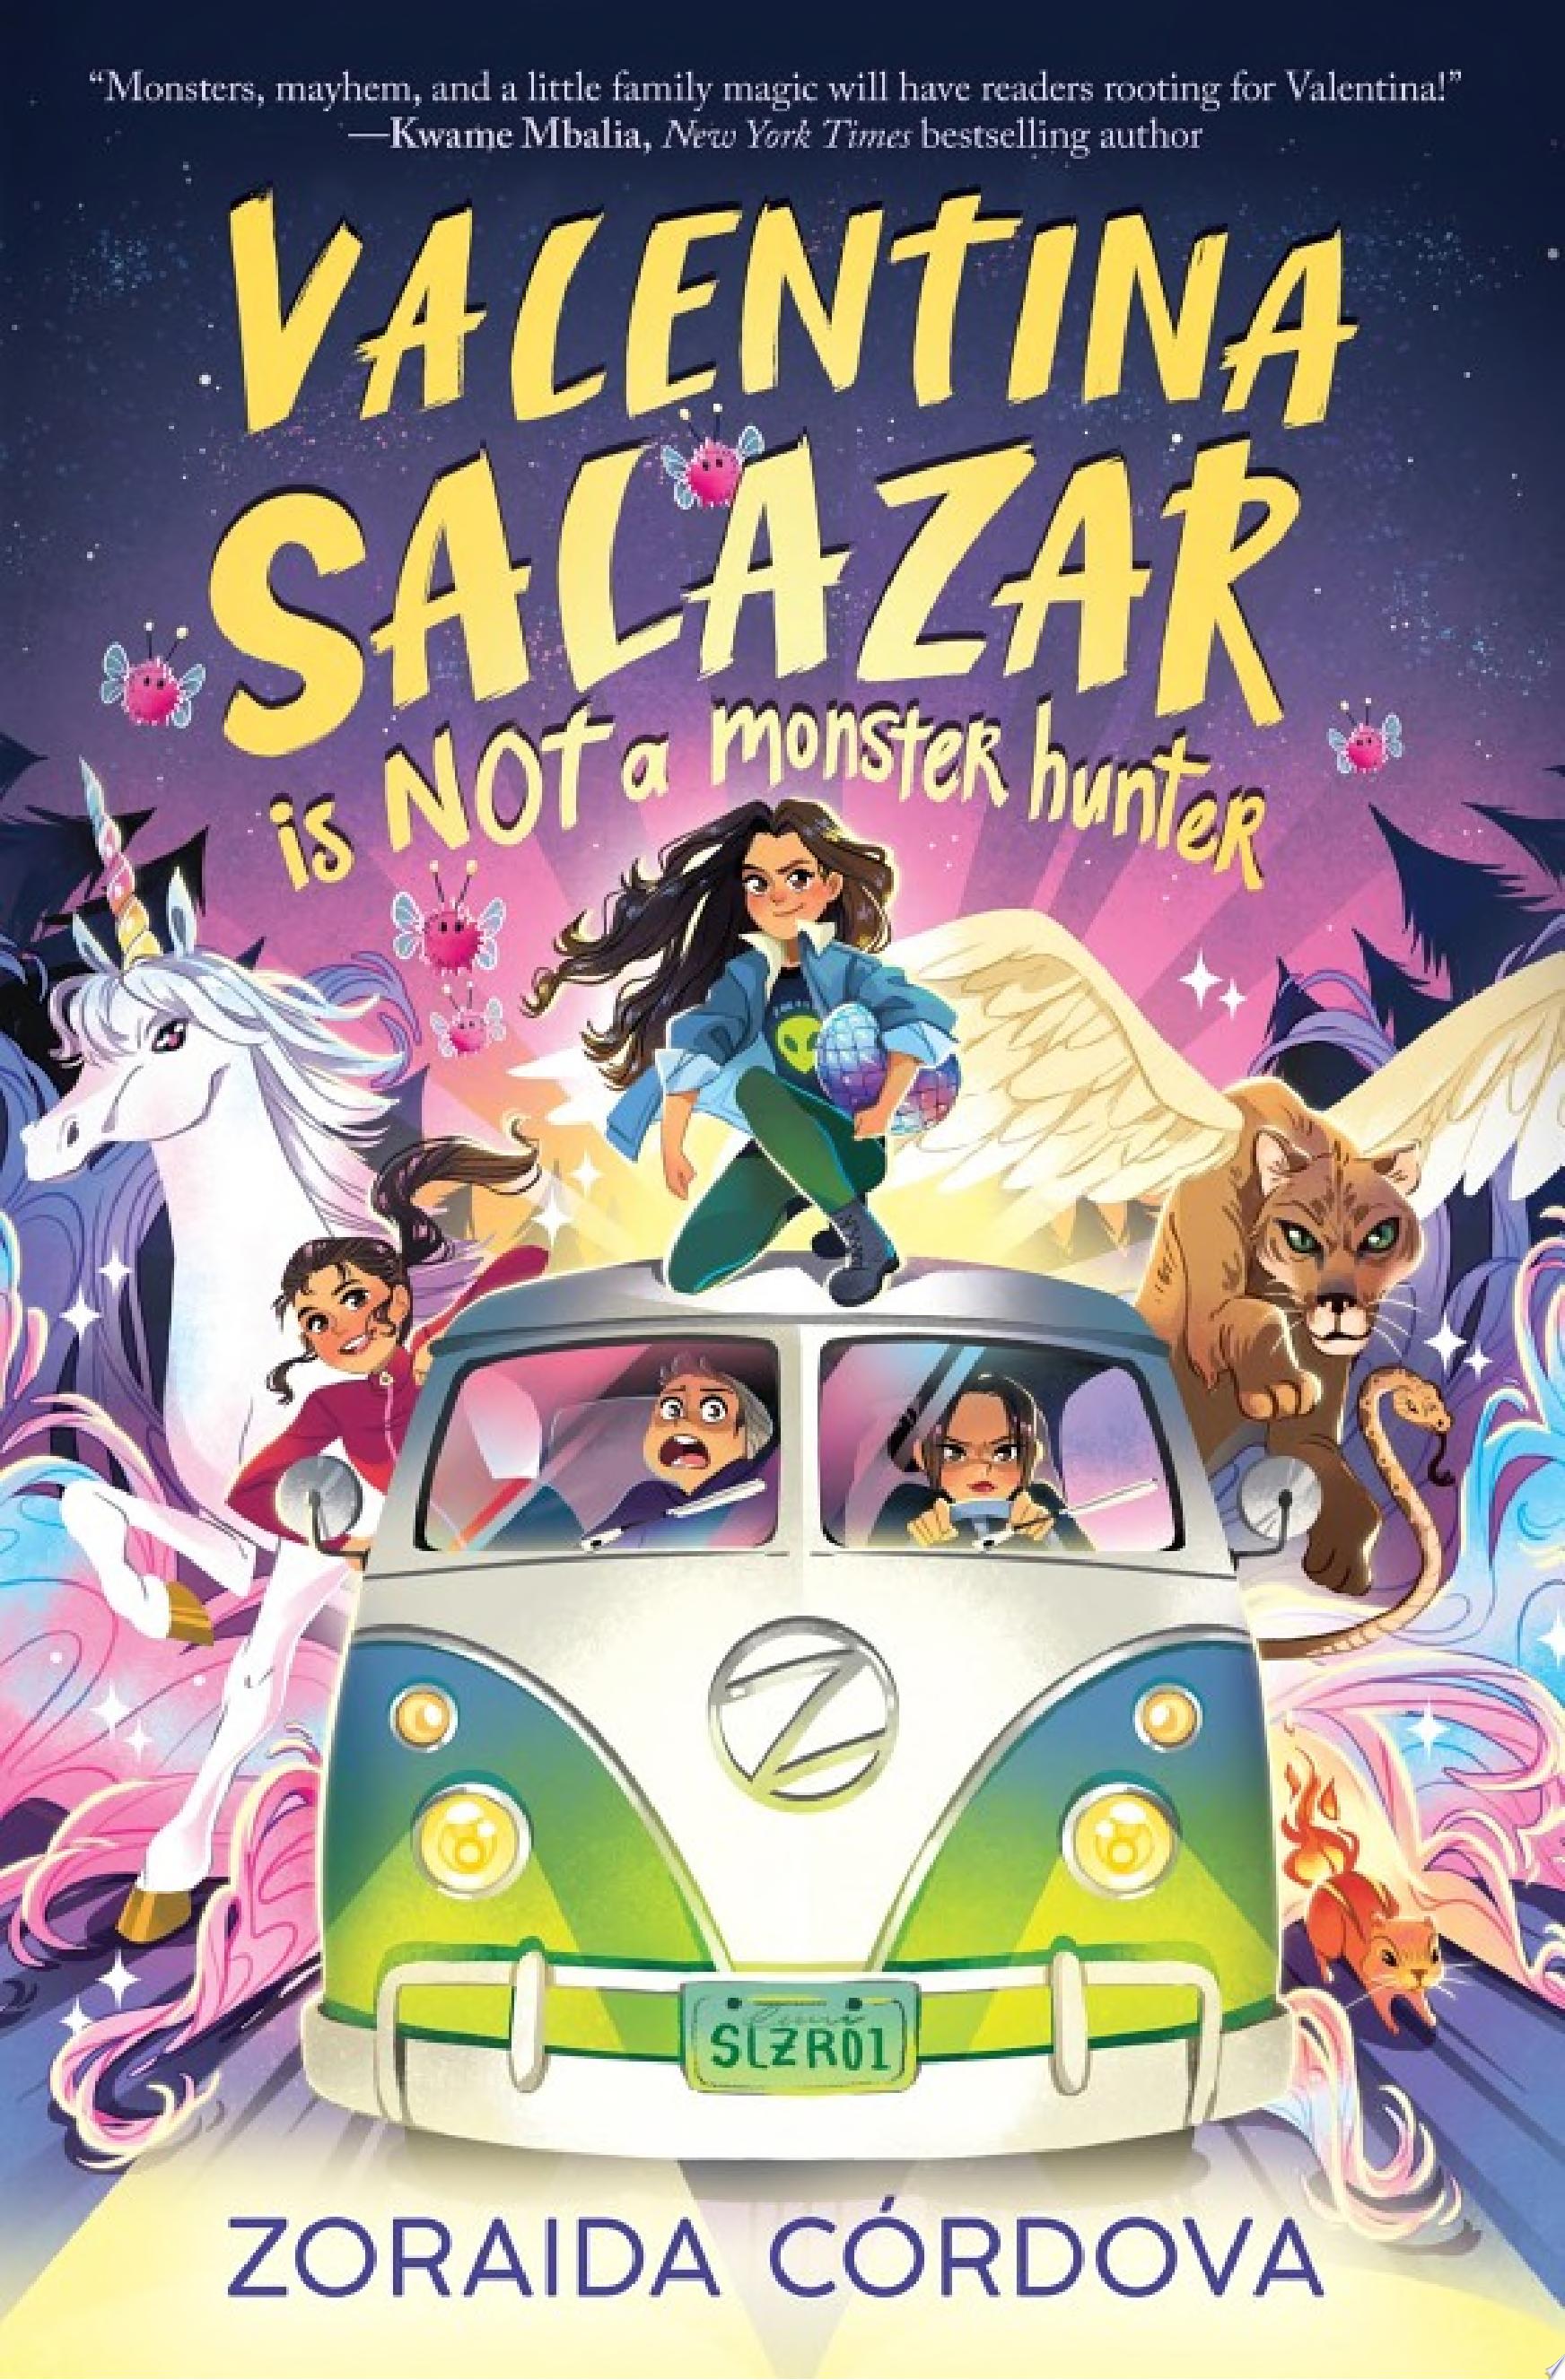 Image for "Valentina Salazar is not a Monster Hunter"